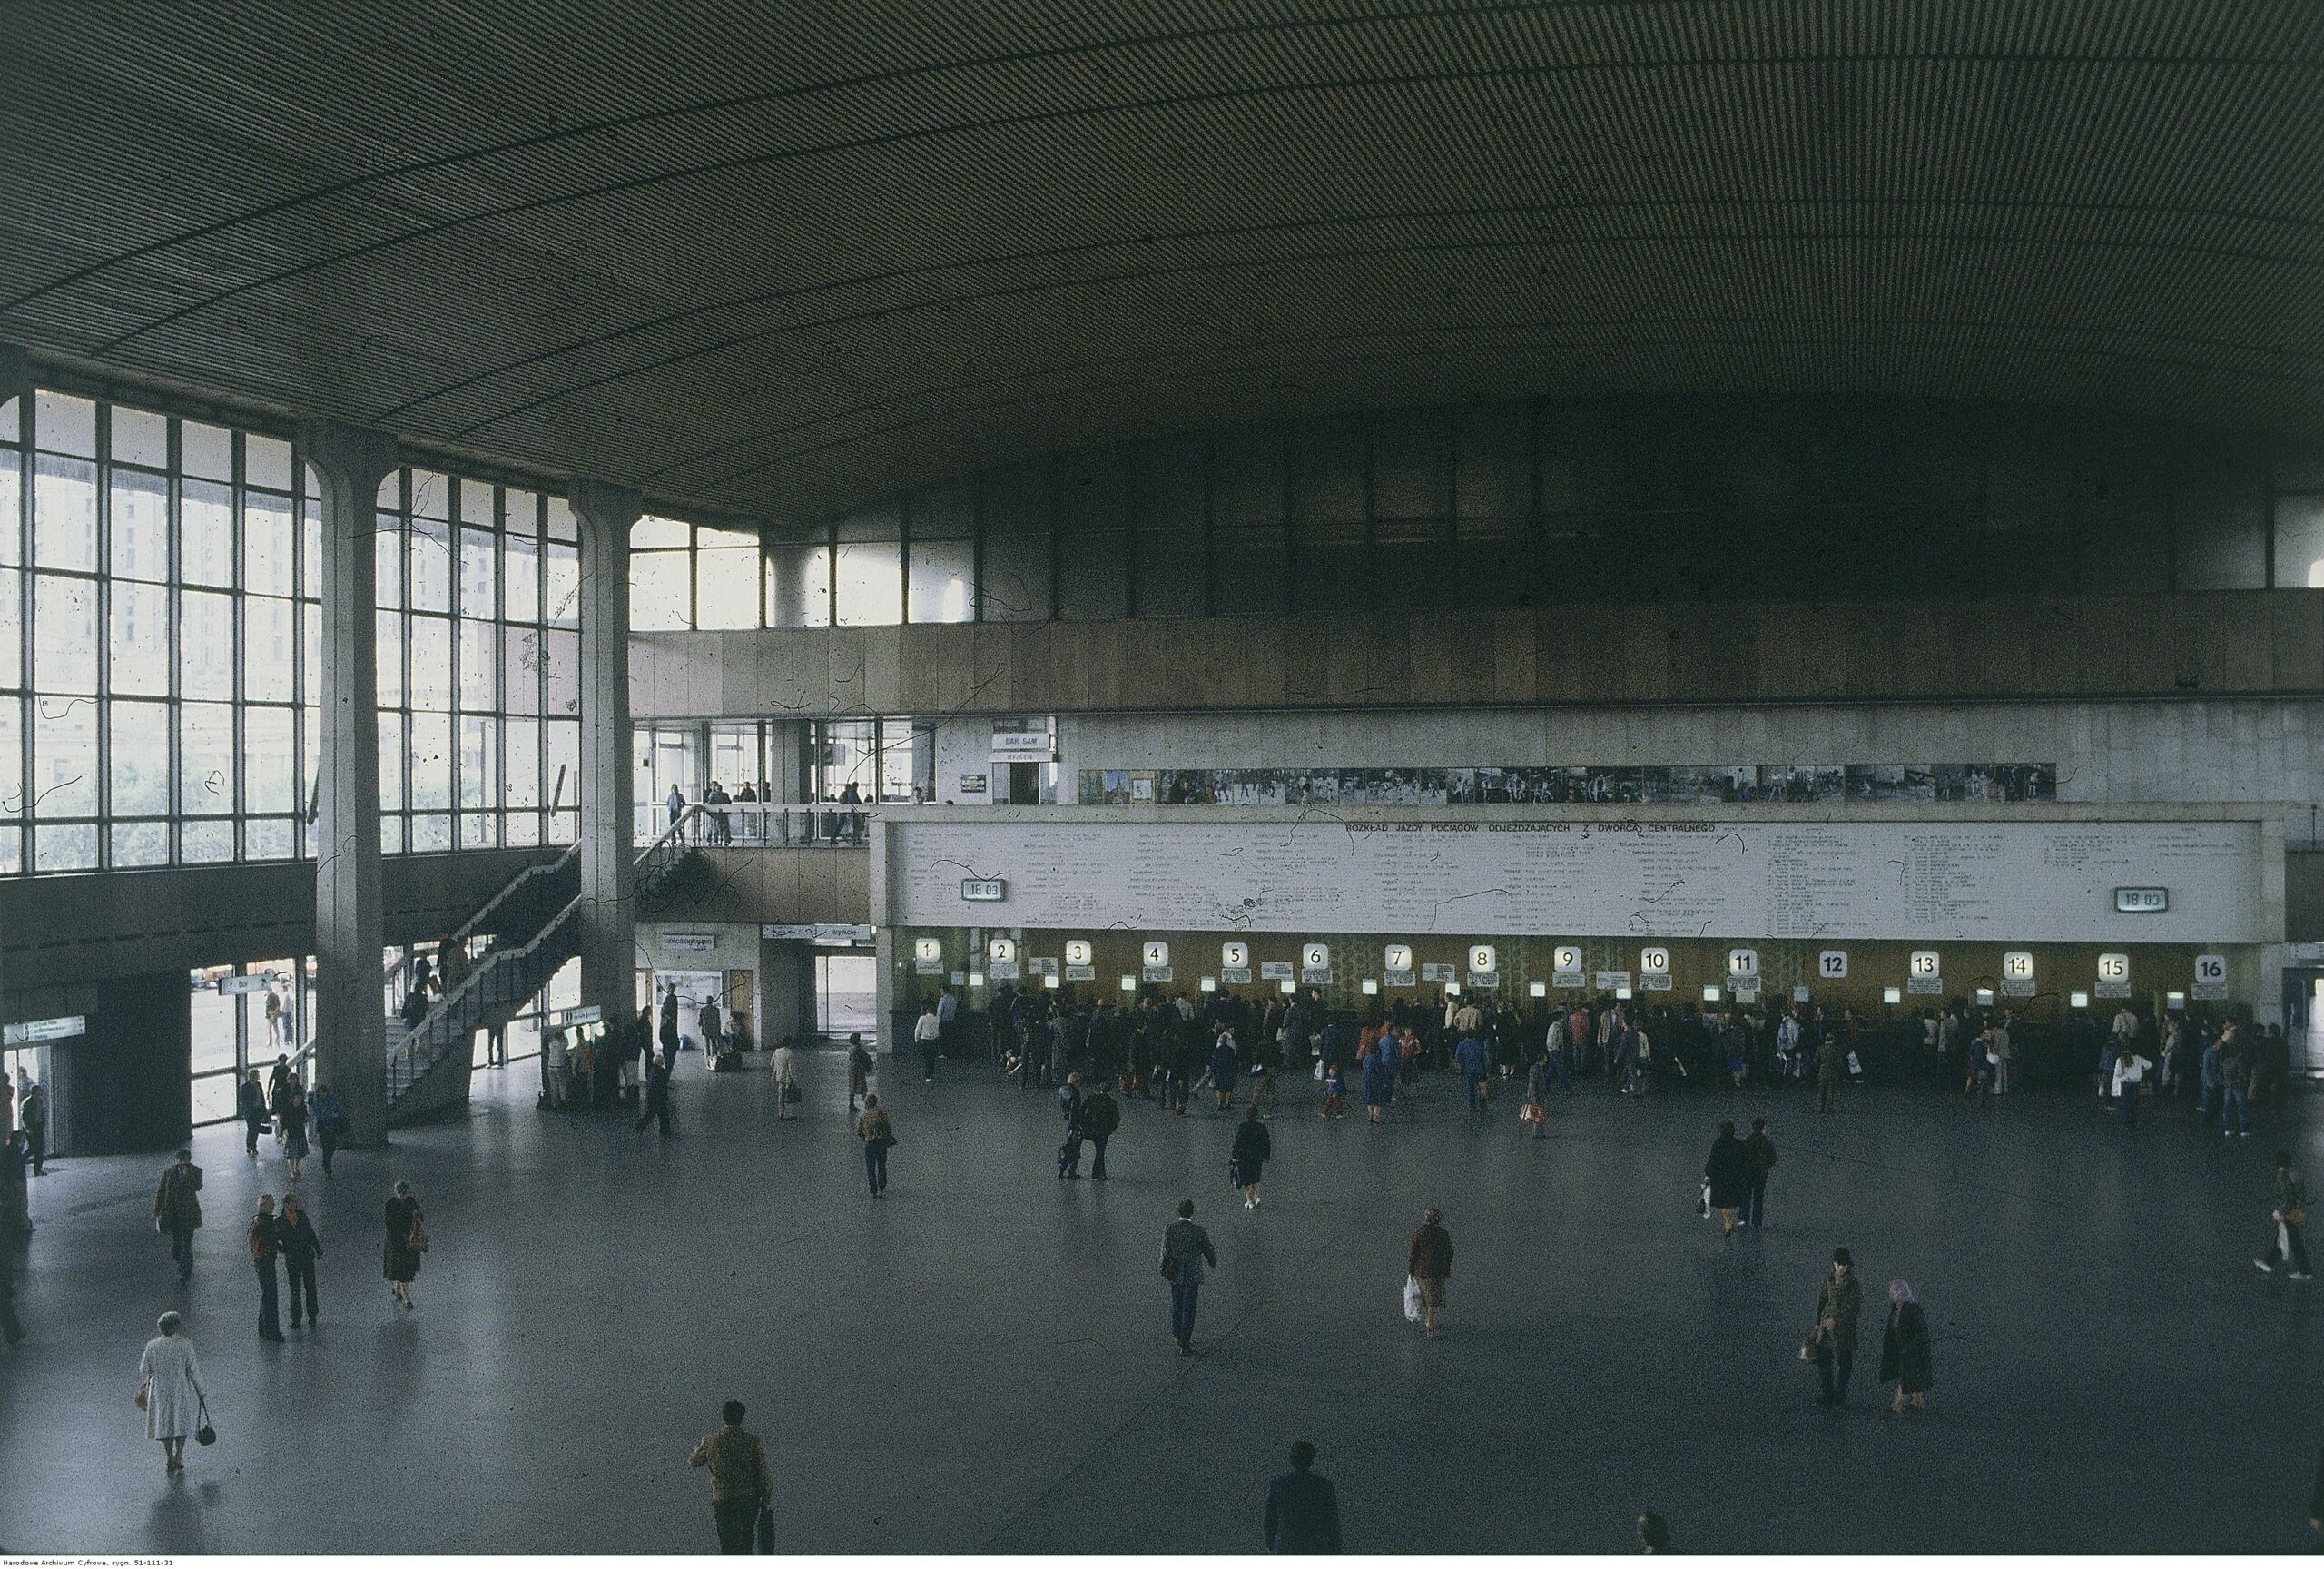 Dworzec Warszawa Centralna